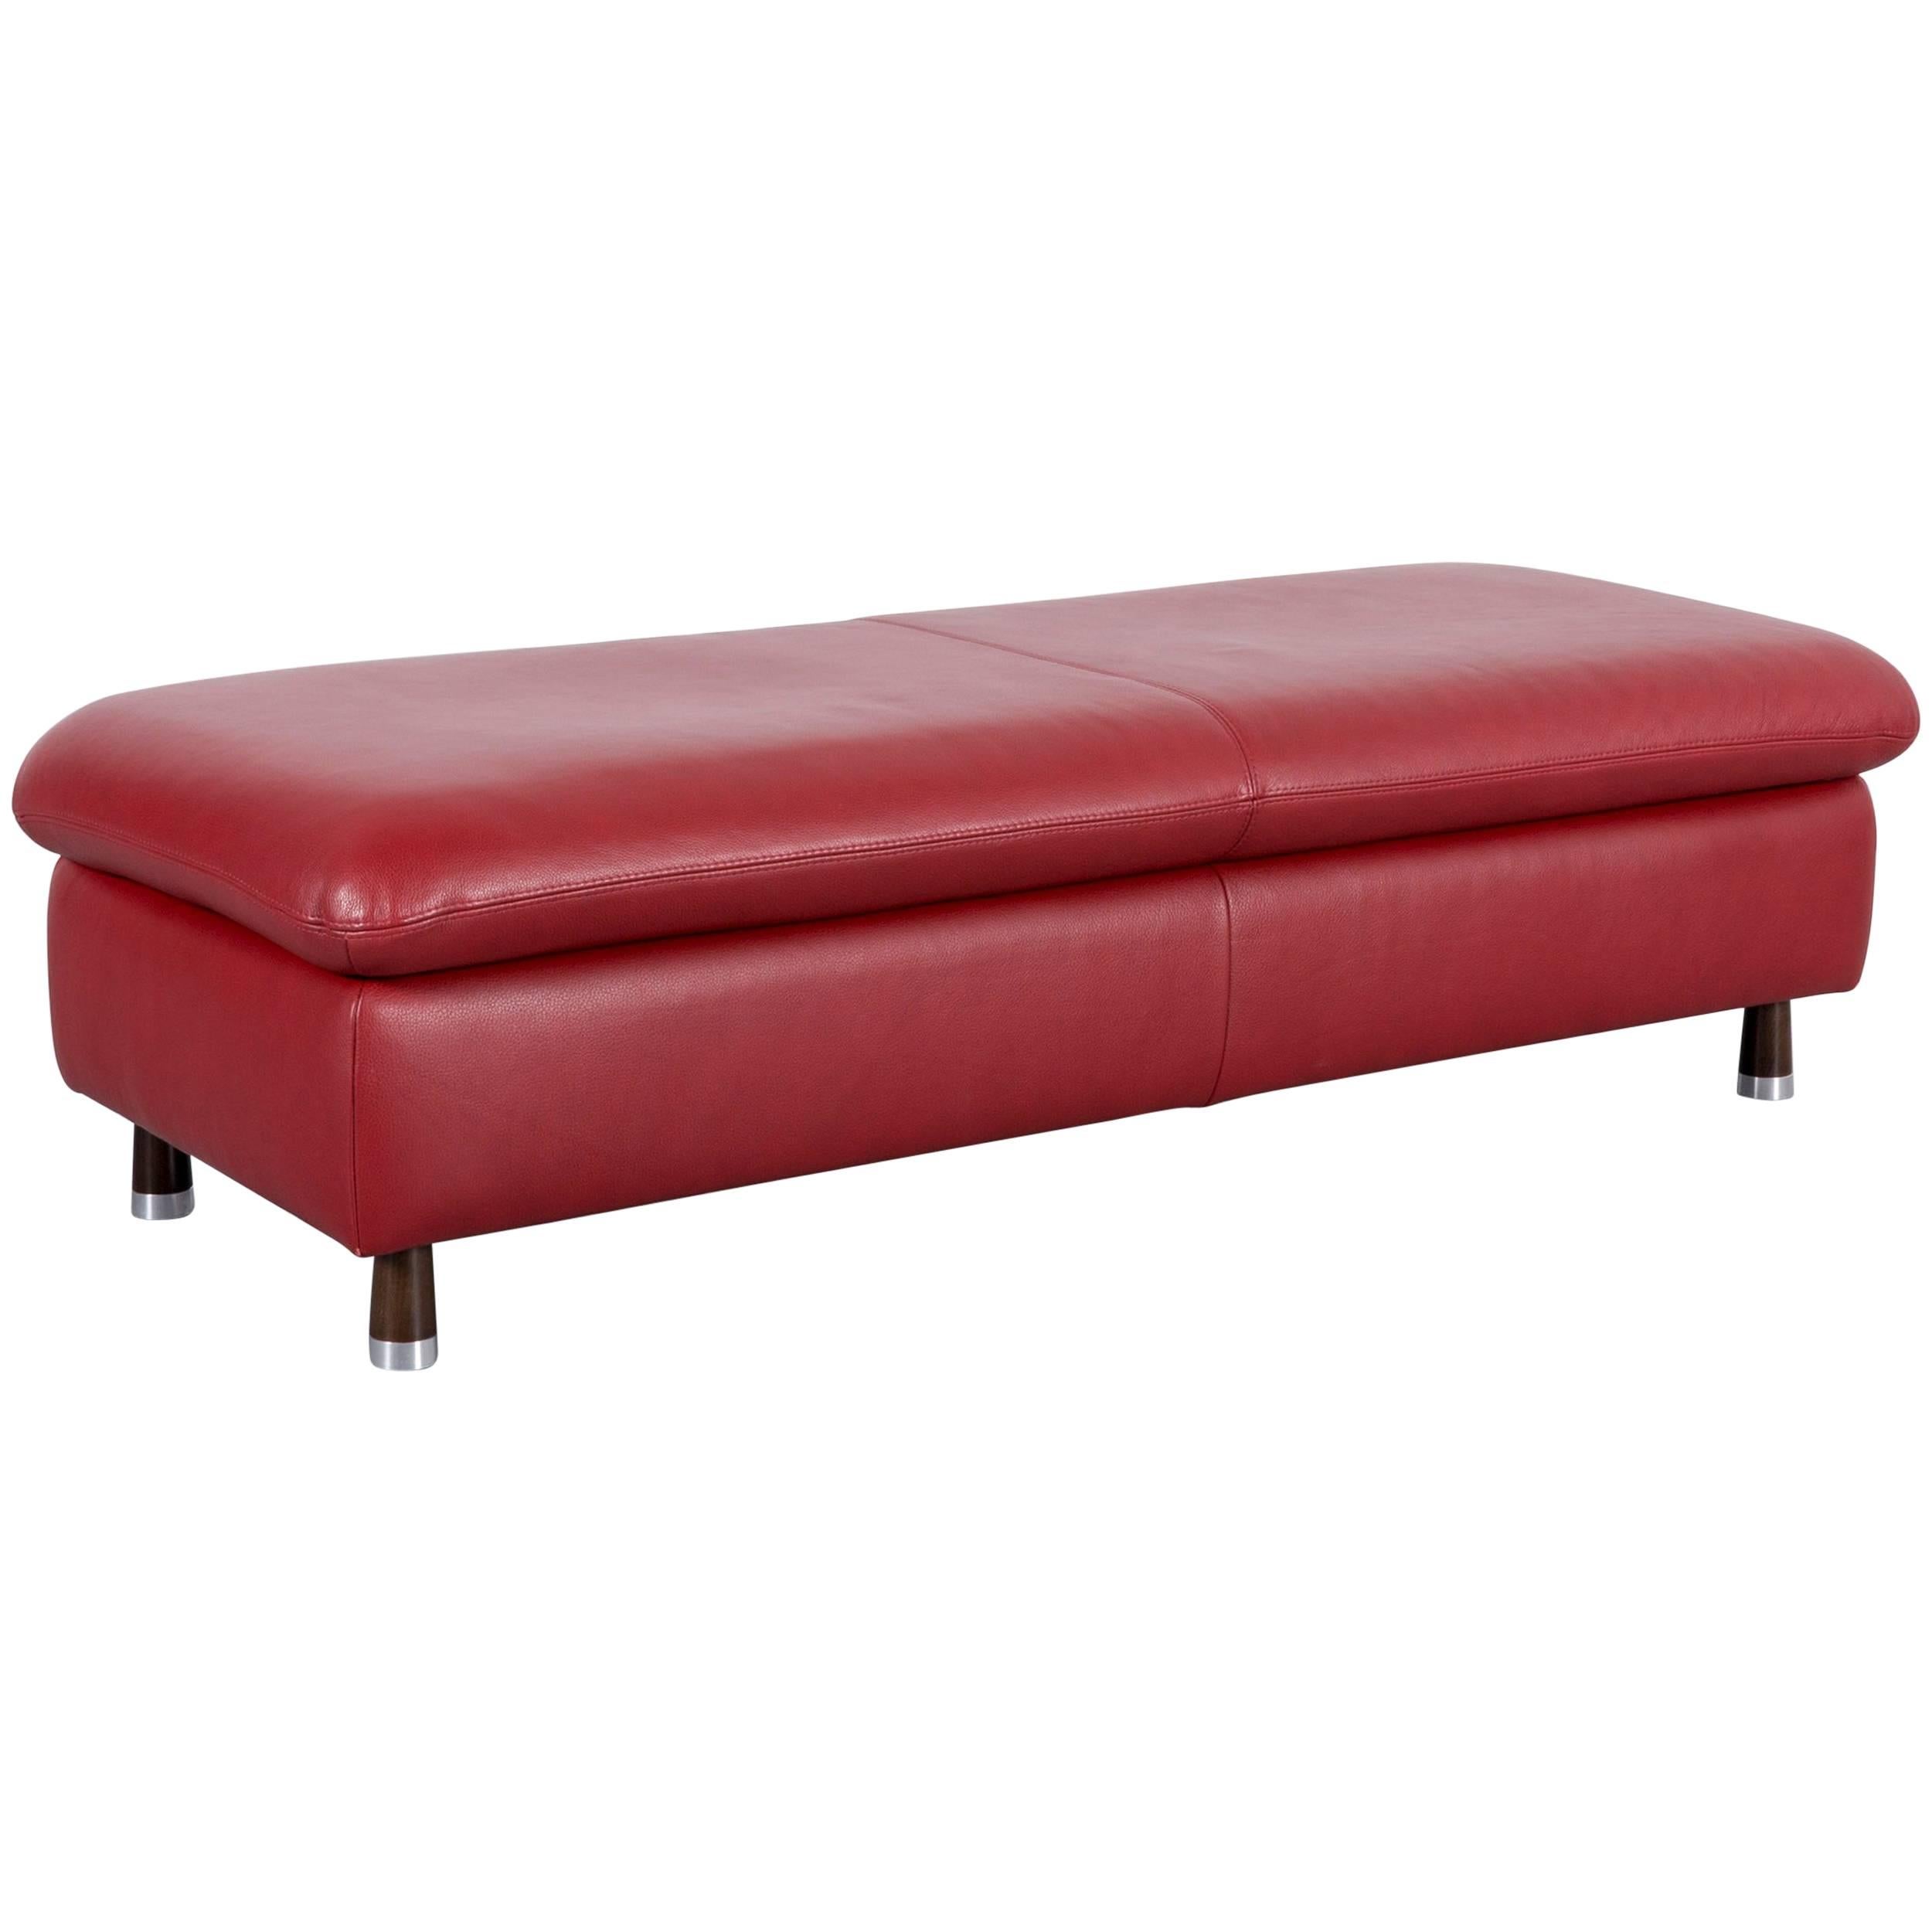 Willi Schillig Designer Footstool Red Leather Modern For Sale